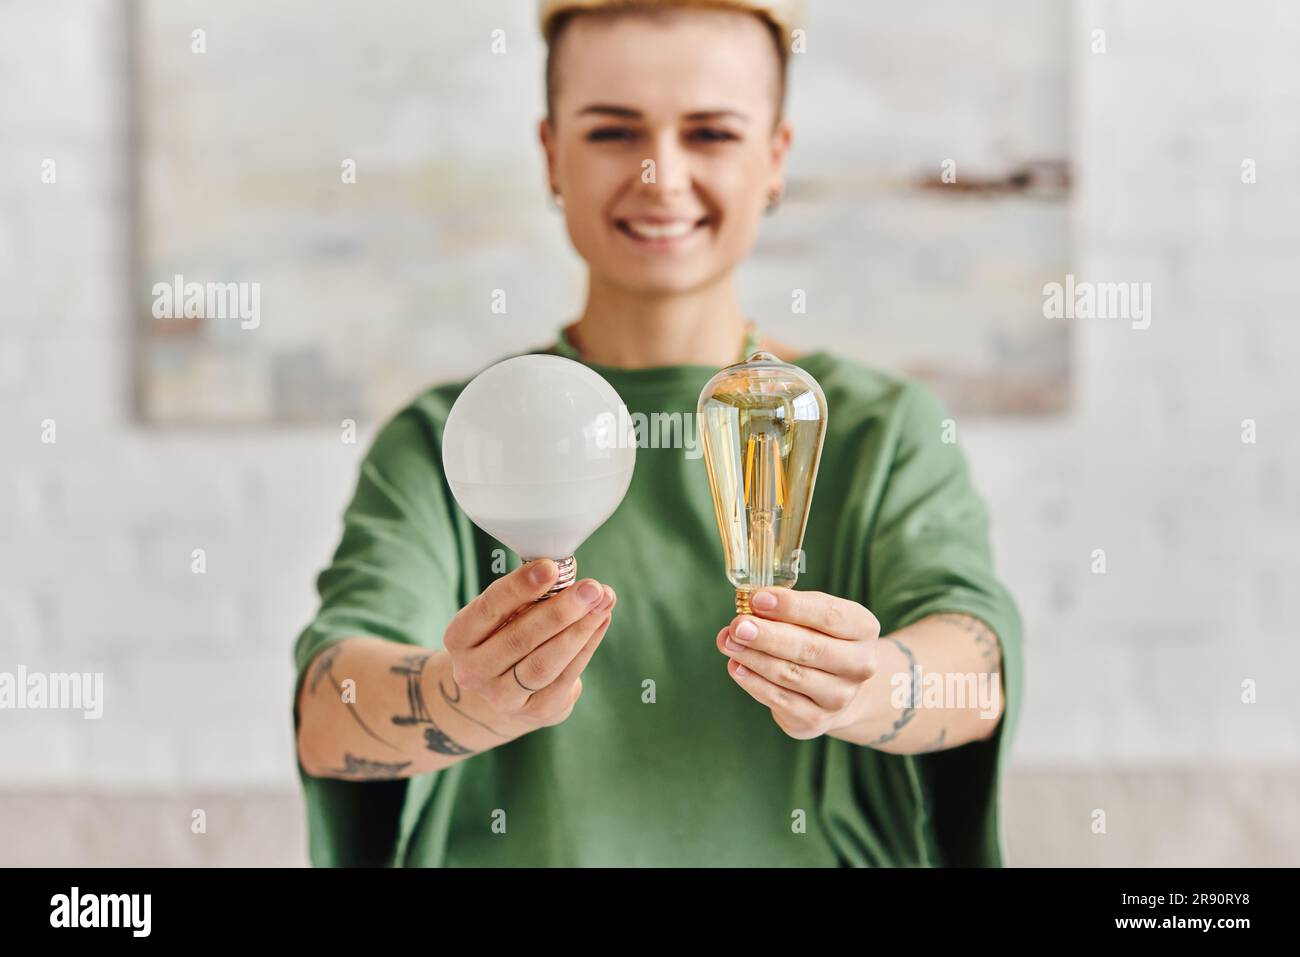 donna allegra, giovane e tatuata in abiti casual che mostra lampadine a risparmio energetico e guarda la fotocamera, rispettosa dell'ambiente, sostenibile Foto Stock